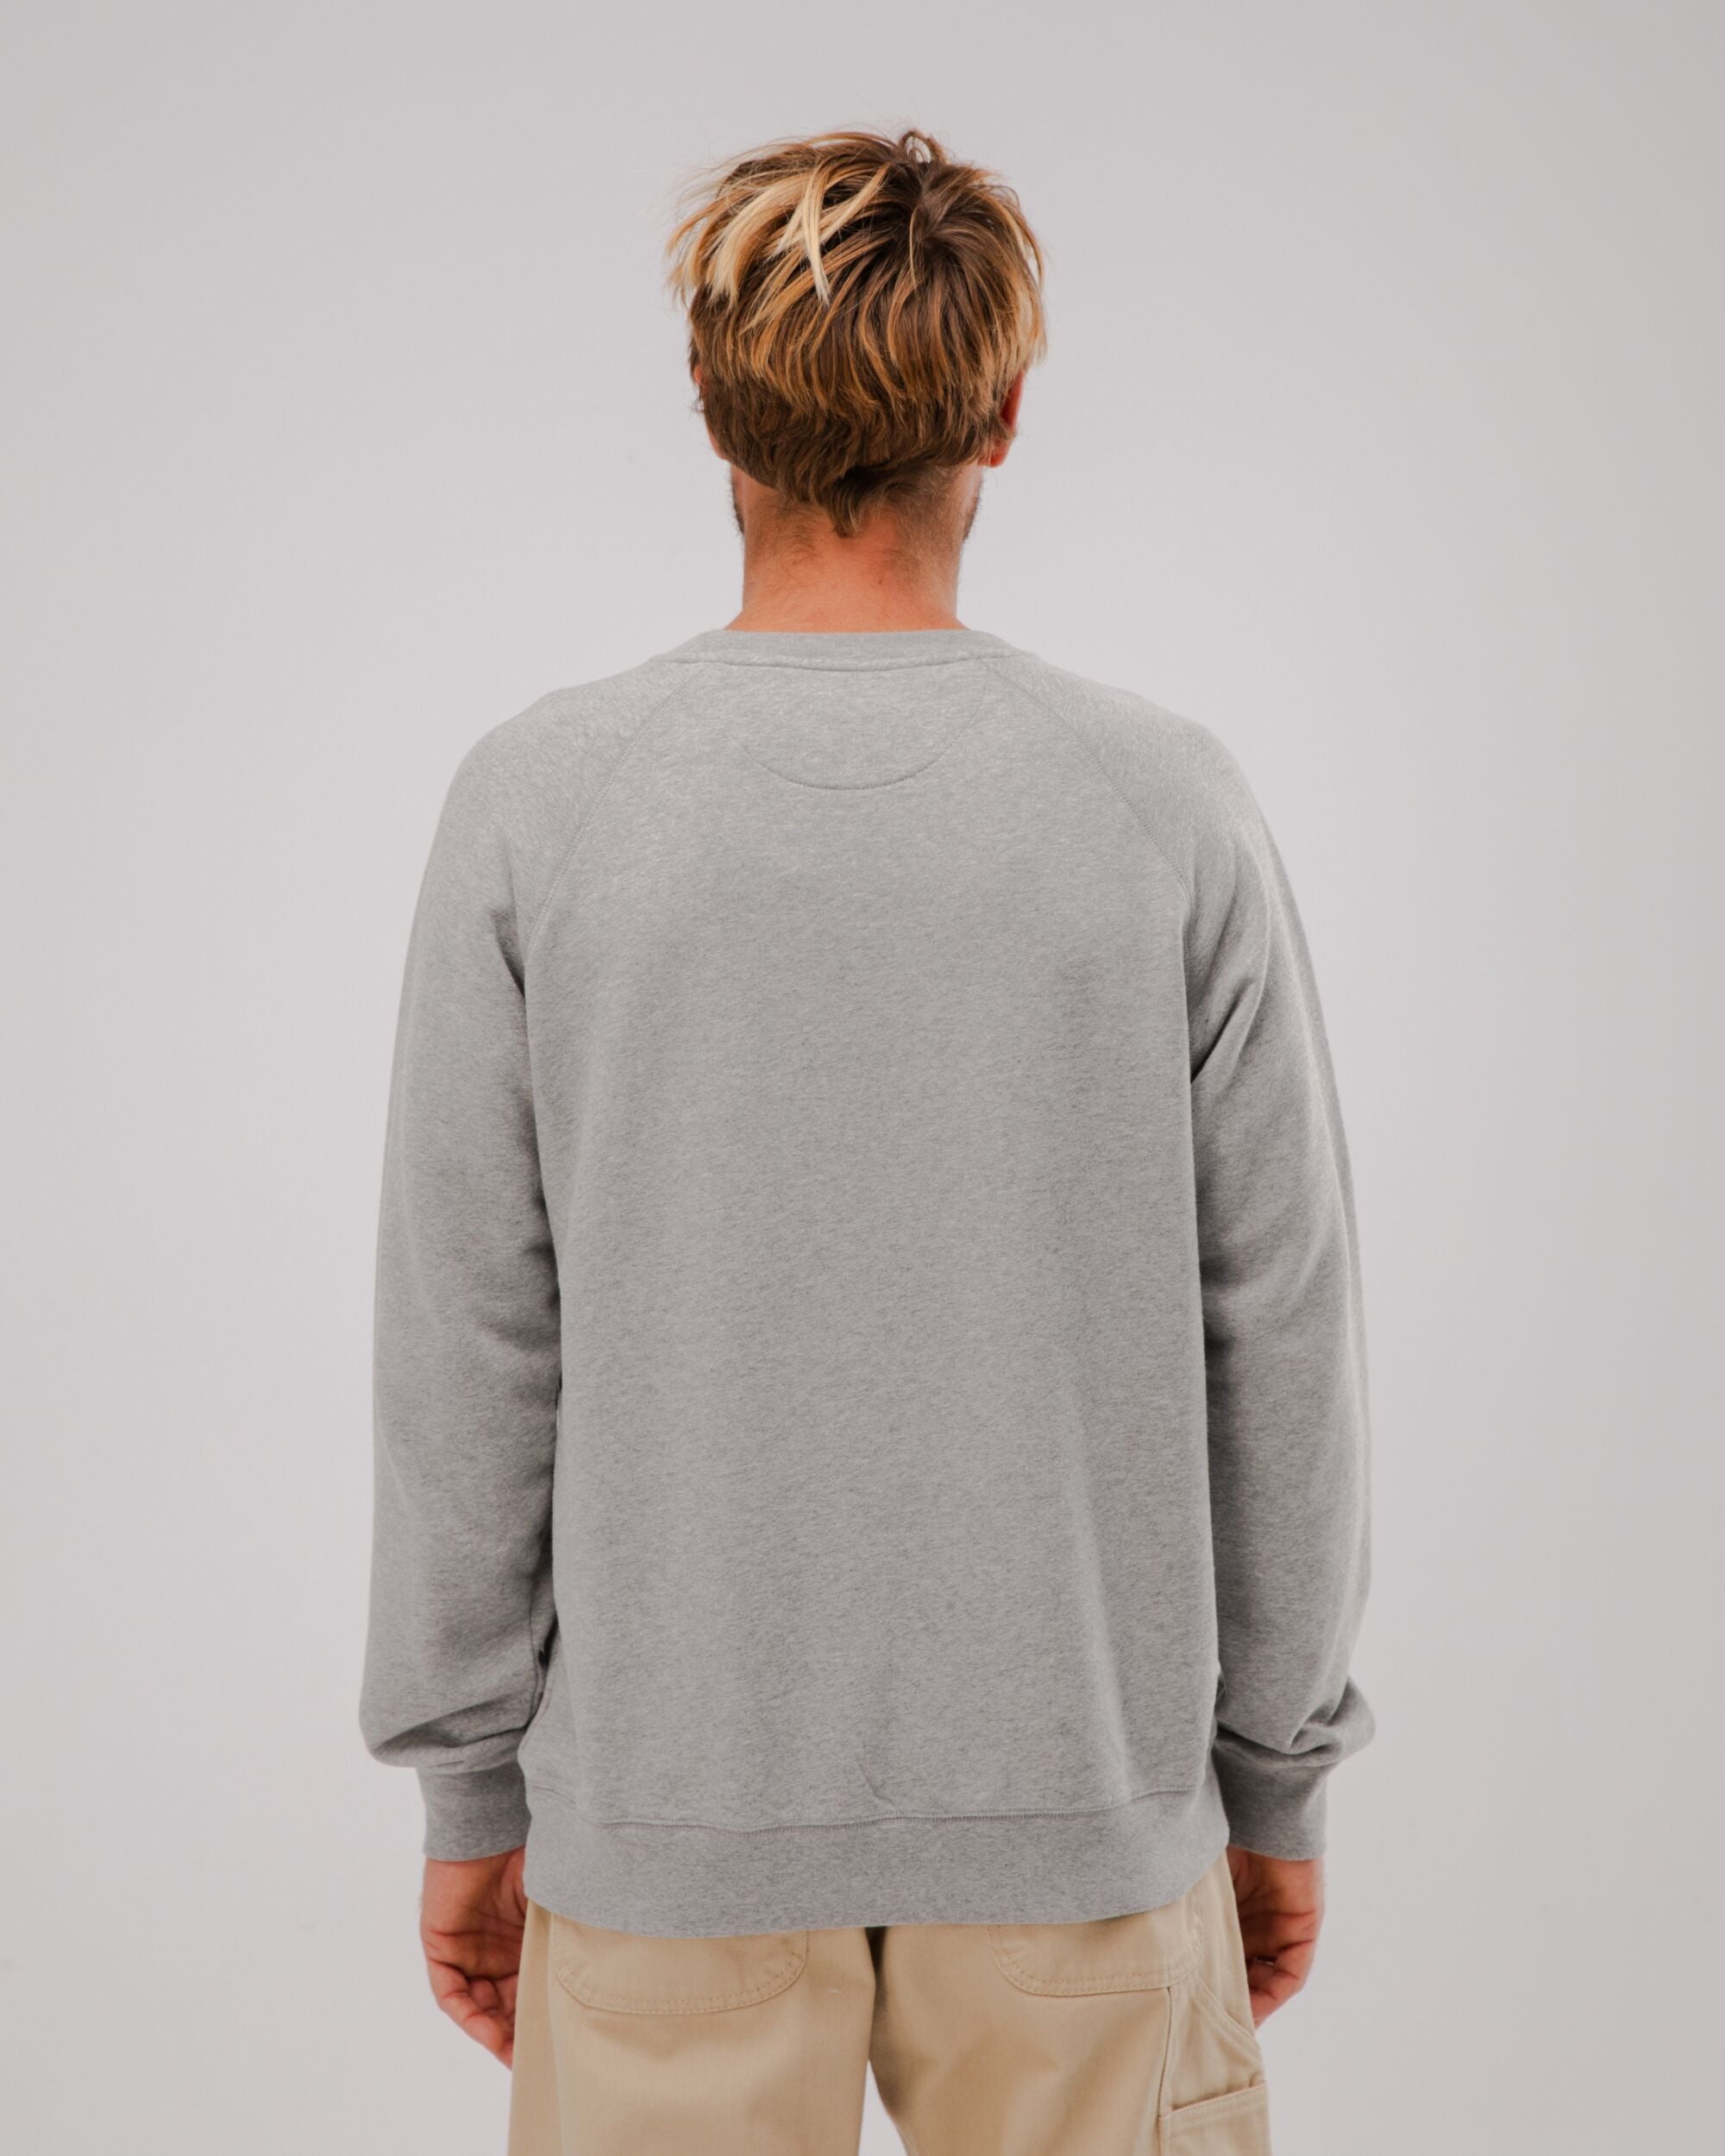 Out of Office Sweatshirt in grau aus Bio Baumwolle von Brava Fabrics